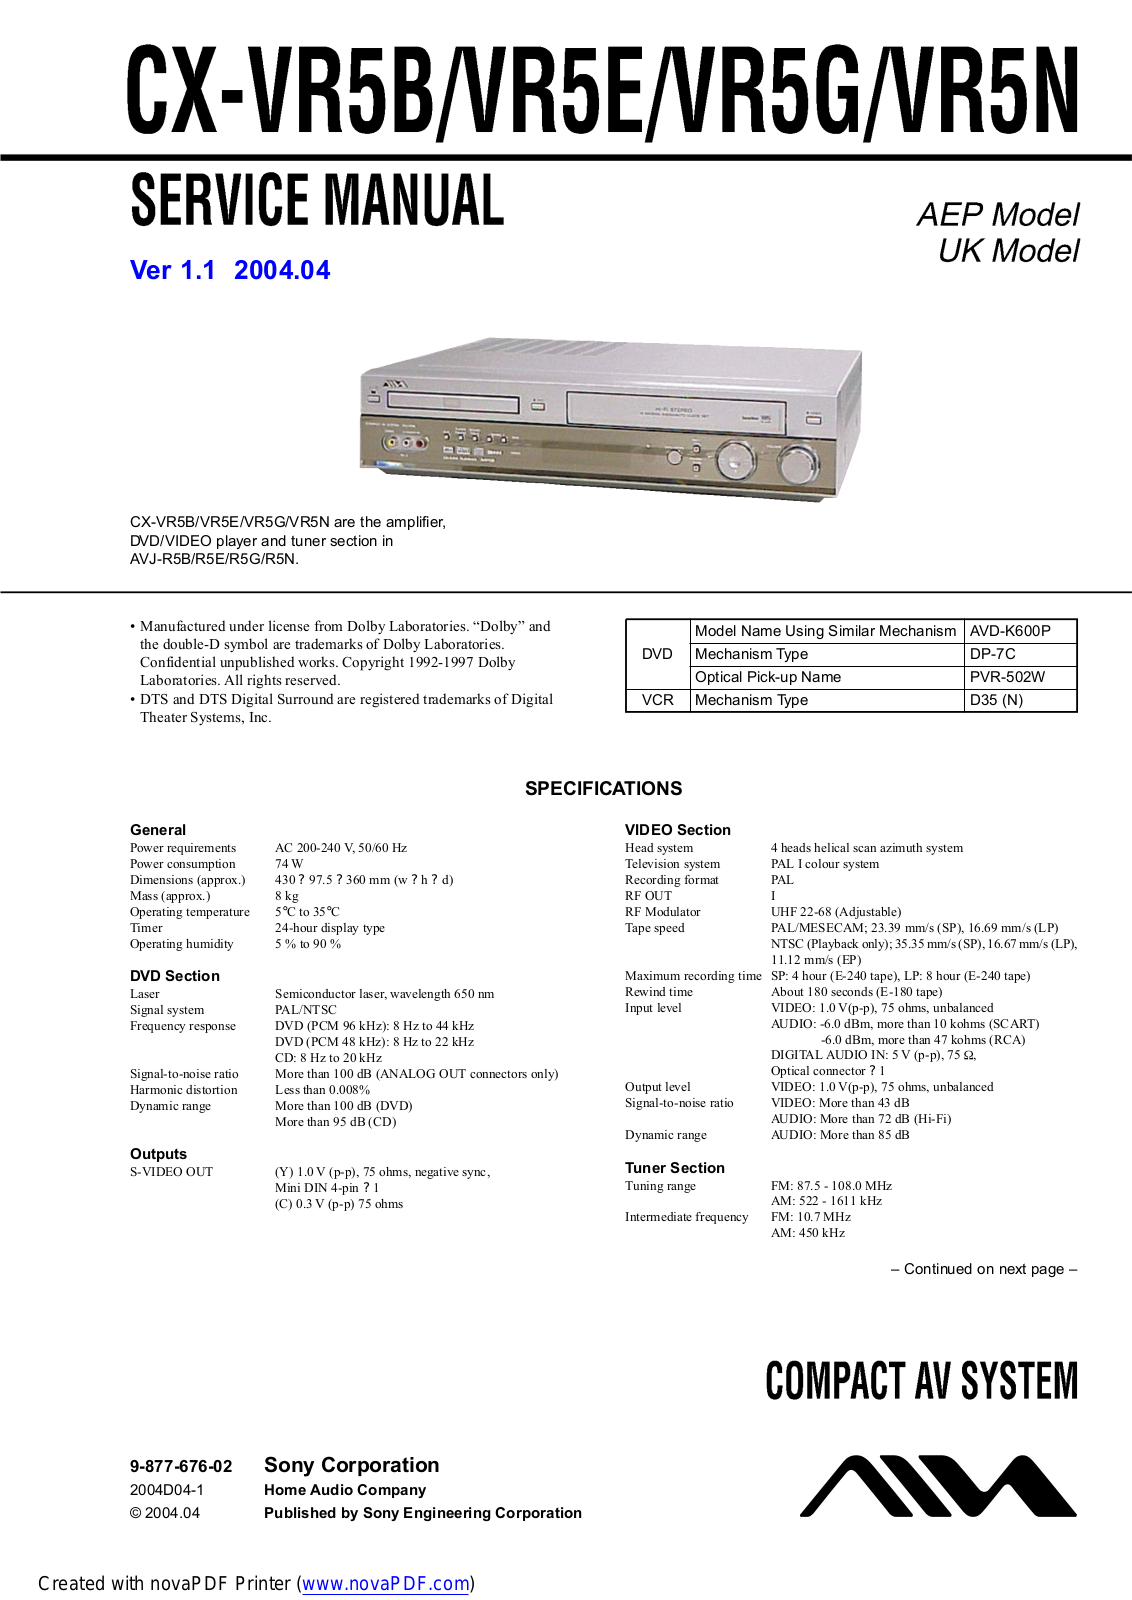 Aiwa CX-VR5B, CX-VR5N, CX-VR5E, CX-VR5G Service Manual